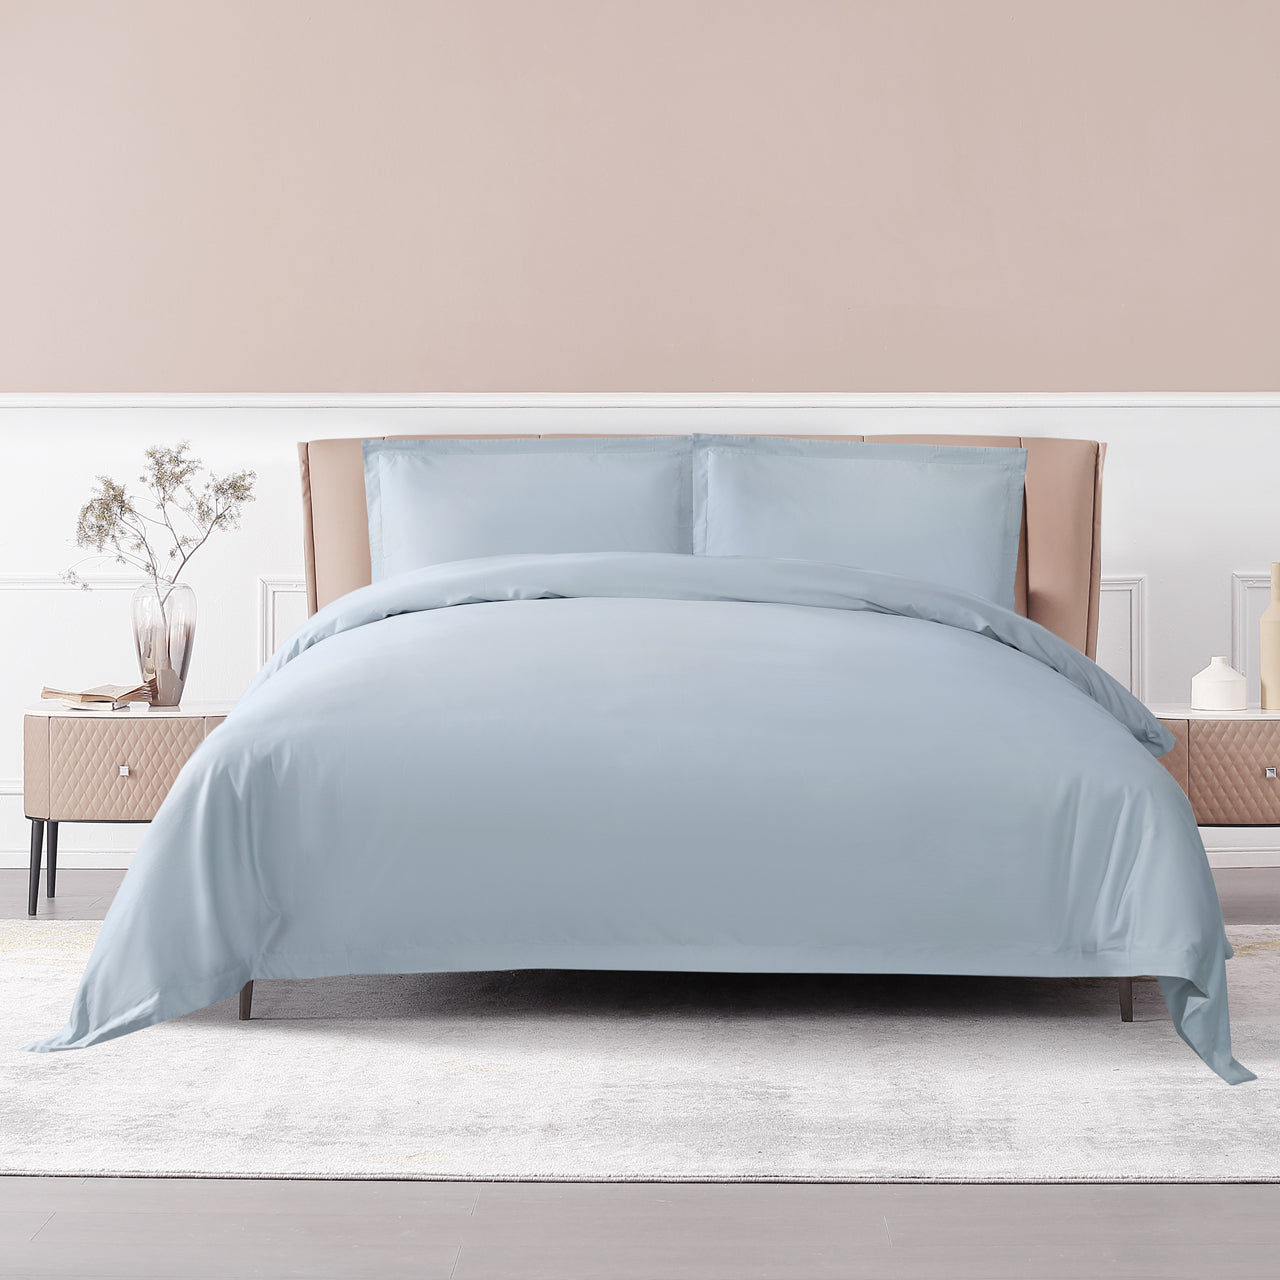 Misty Blue 100% Long-Staple Cotton Duvet Cover Set (3 Pieces), Luxury & Elegant